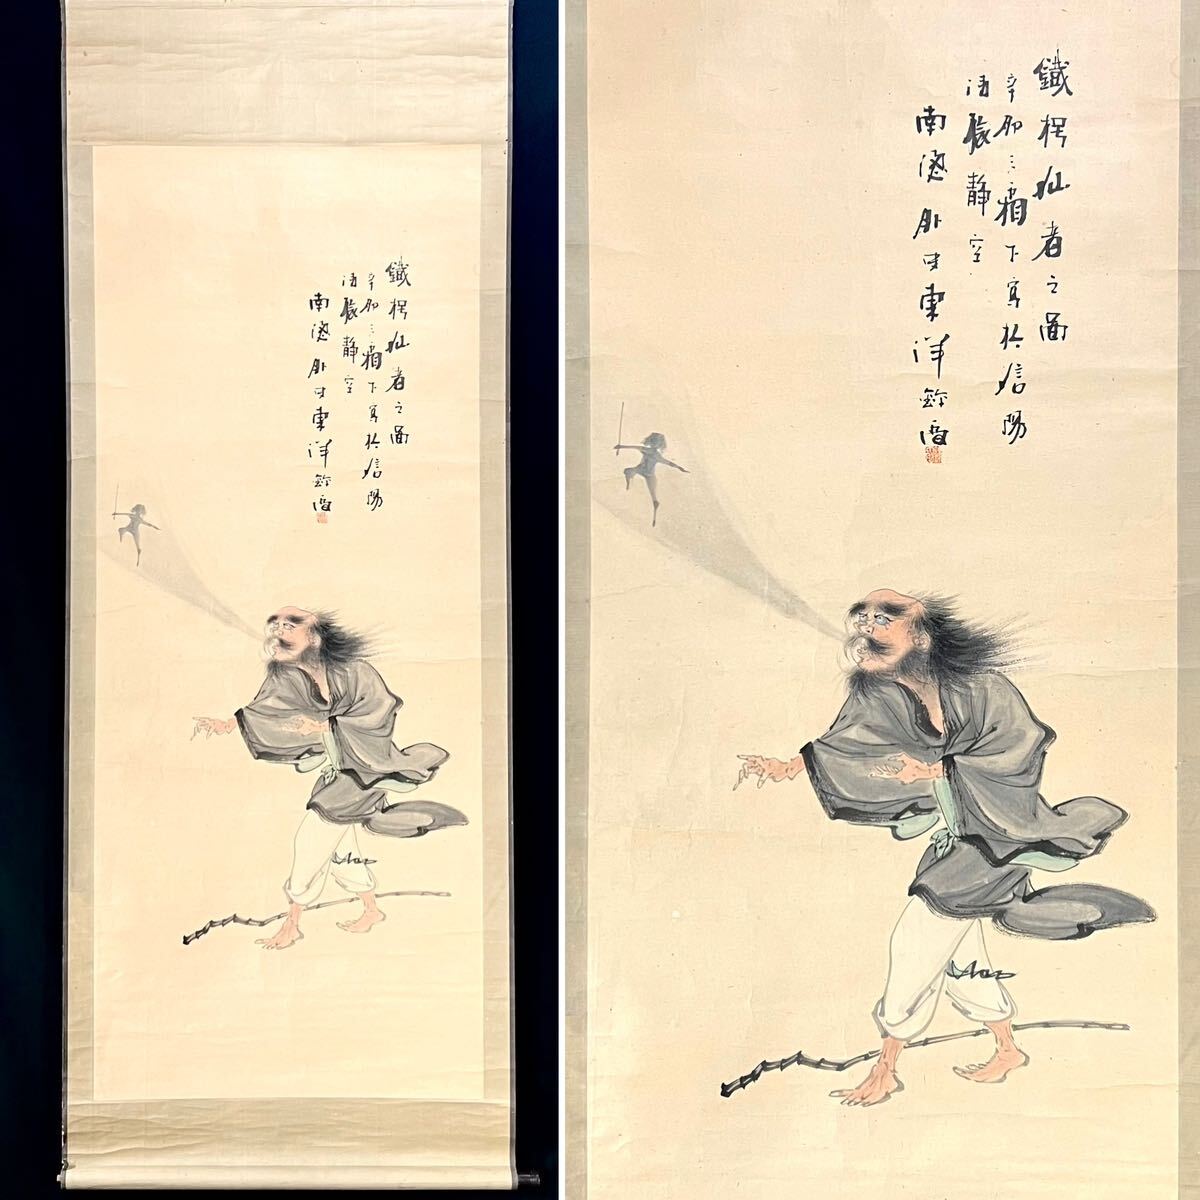 [कॉपी] टोयो किंका हर्मिट हैंगिंग स्क्रॉल, डिब्बा, कागज की किताब, चित्रांकन, चीन, चीनी कला, लोगों द्वारा लिखित h031301, चित्रकारी, जापानी पेंटिंग, व्यक्ति, बोधिसत्त्व